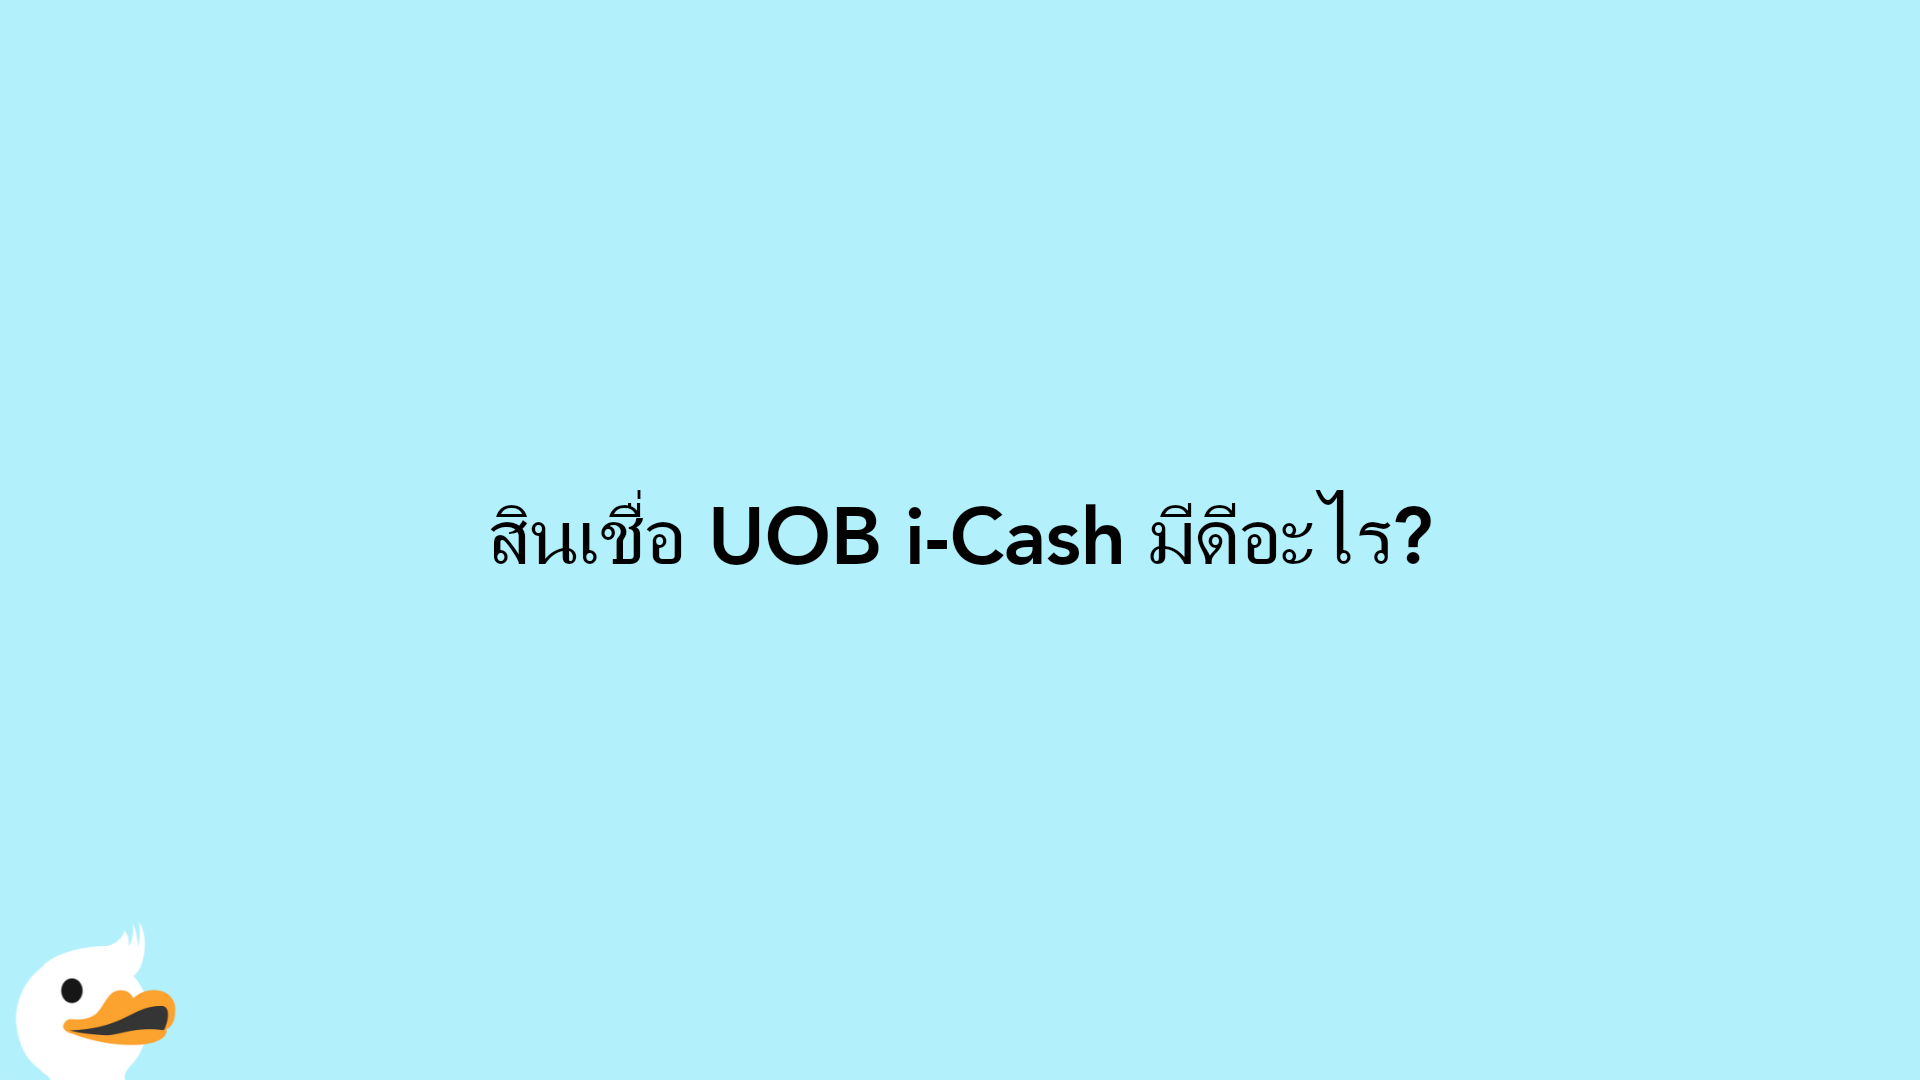 สินเชื่อ UOB i-Cash มีดีอะไร?